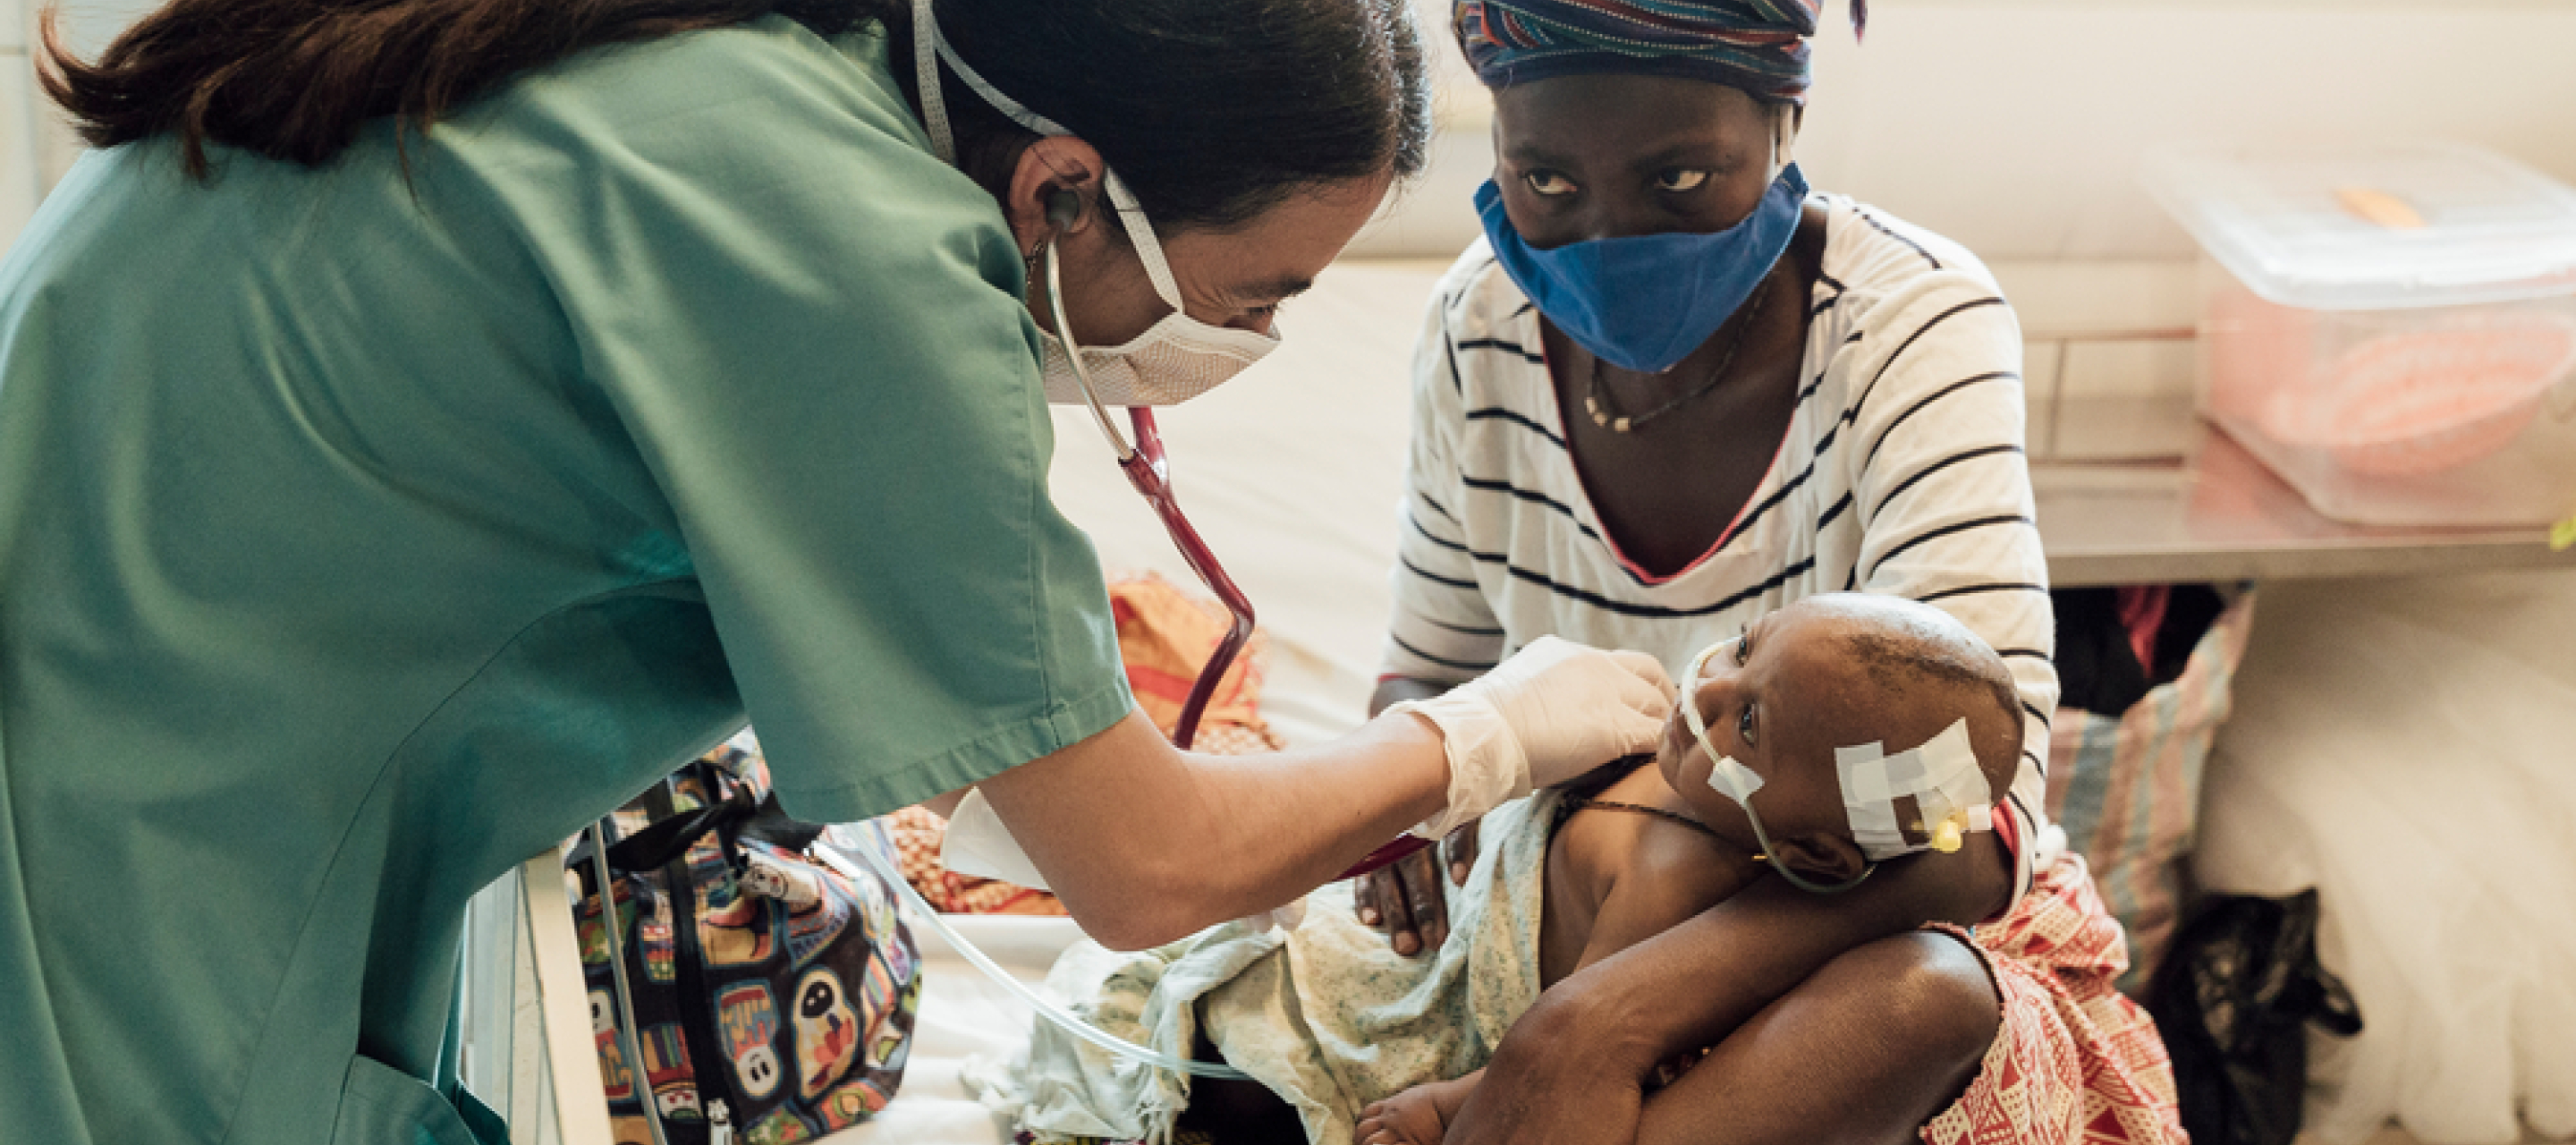 Ärztin versorgt Baby in Krankenbett